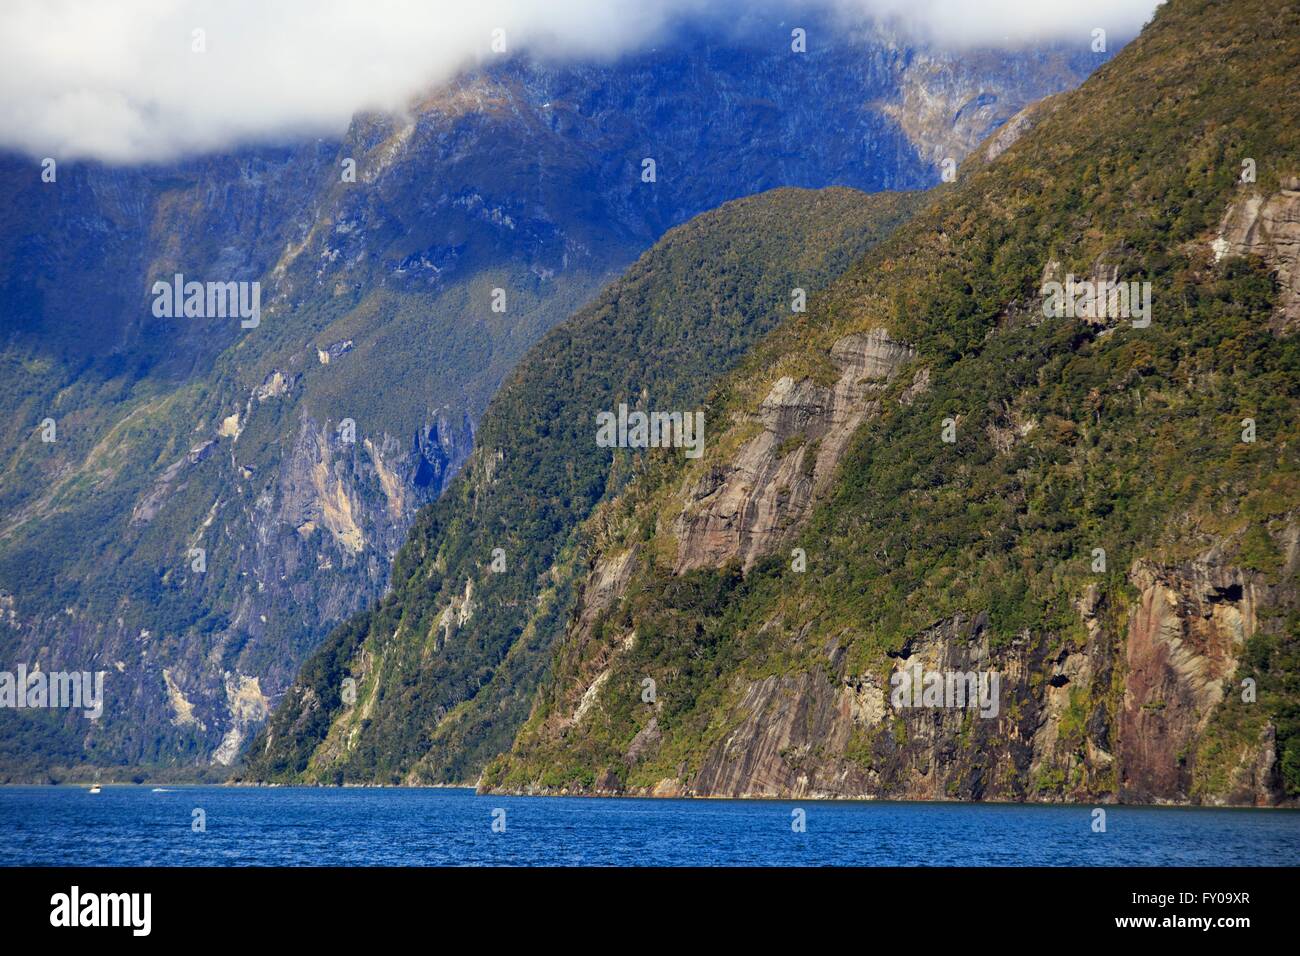 Milford Sound auf der Südinsel von Neuseeland ist berühmt für seine hoch aufragenden Berggipfeln rund um eine enge Schlucht. Stockfoto